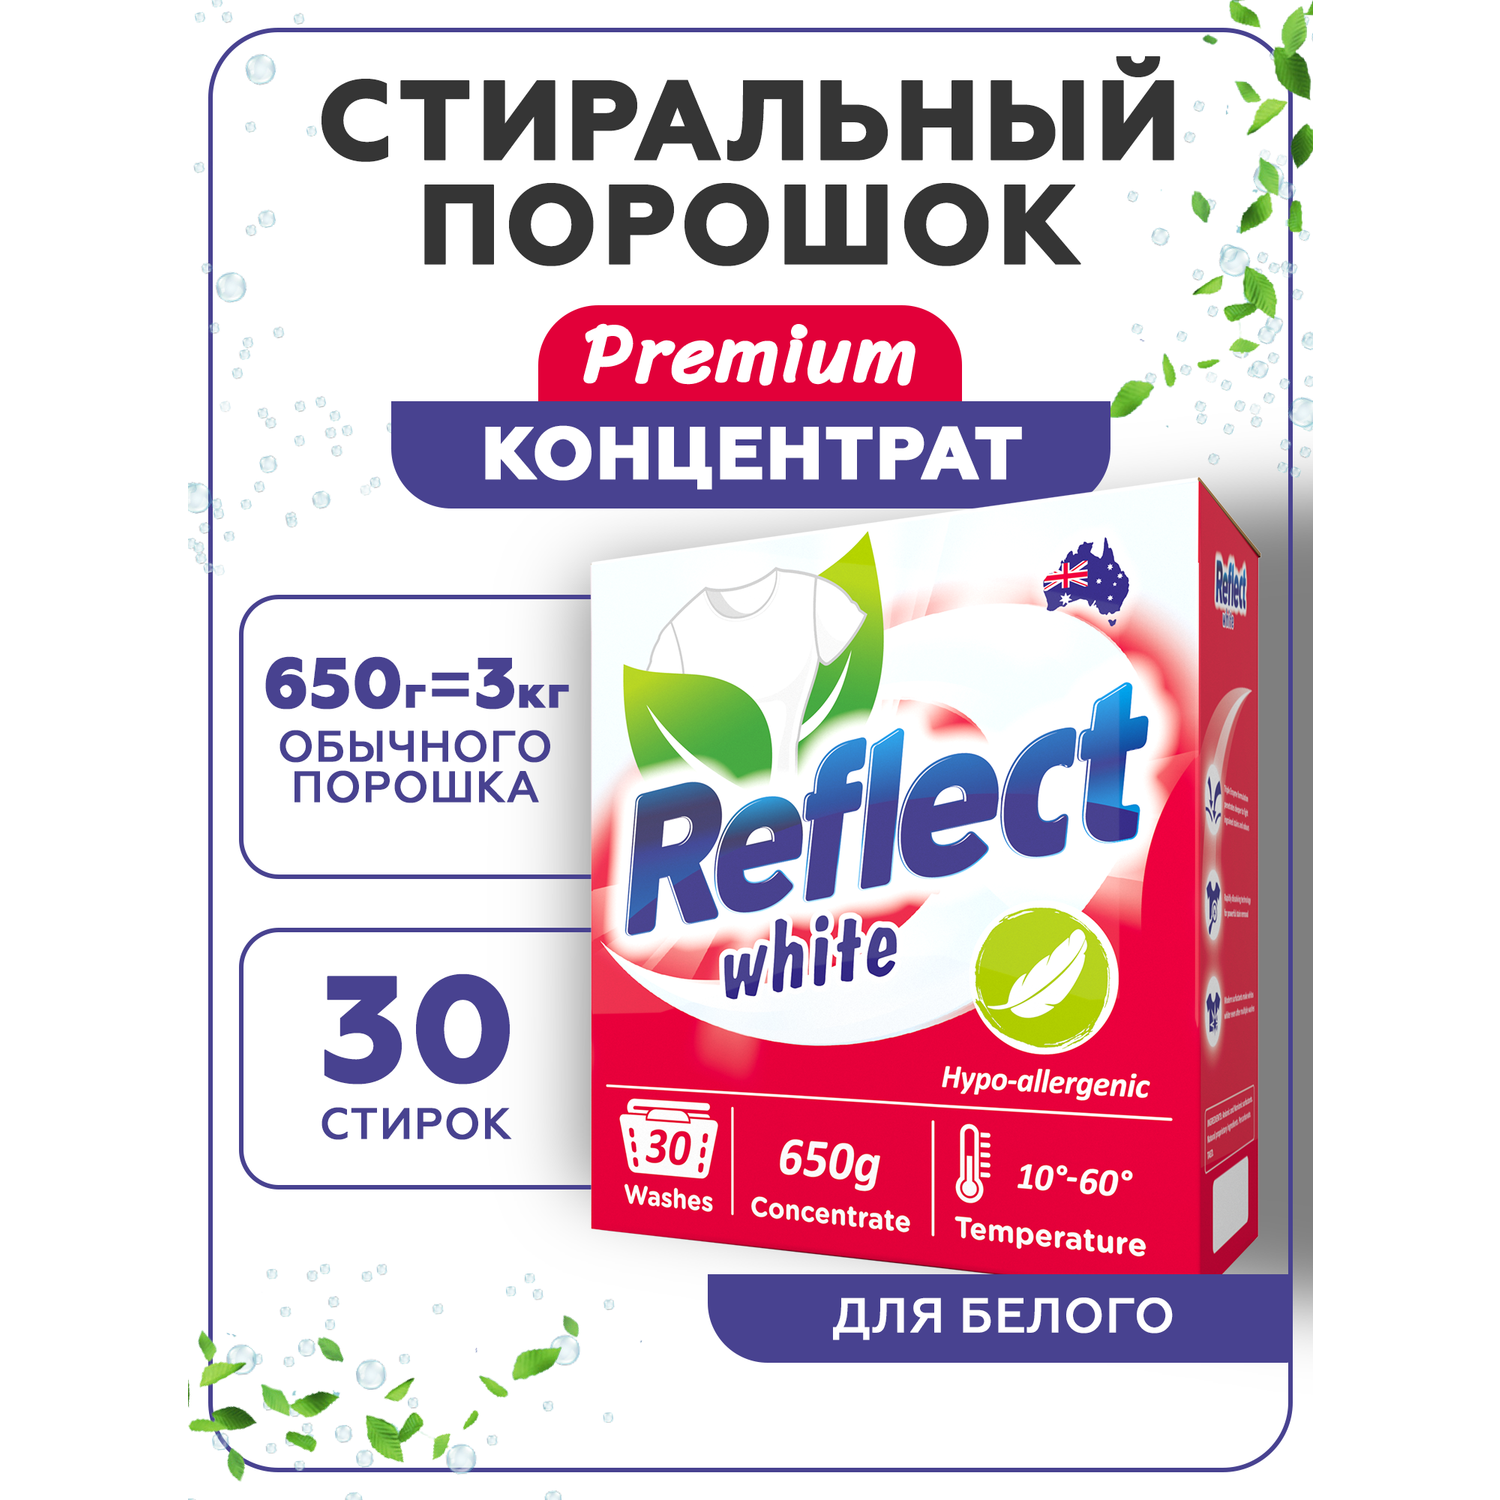 Стиральный порошок Reflect WHITE гипоаллергенный ЭКОлогичный концентрированный для белого белья 650 г 30 стирок - фото 1